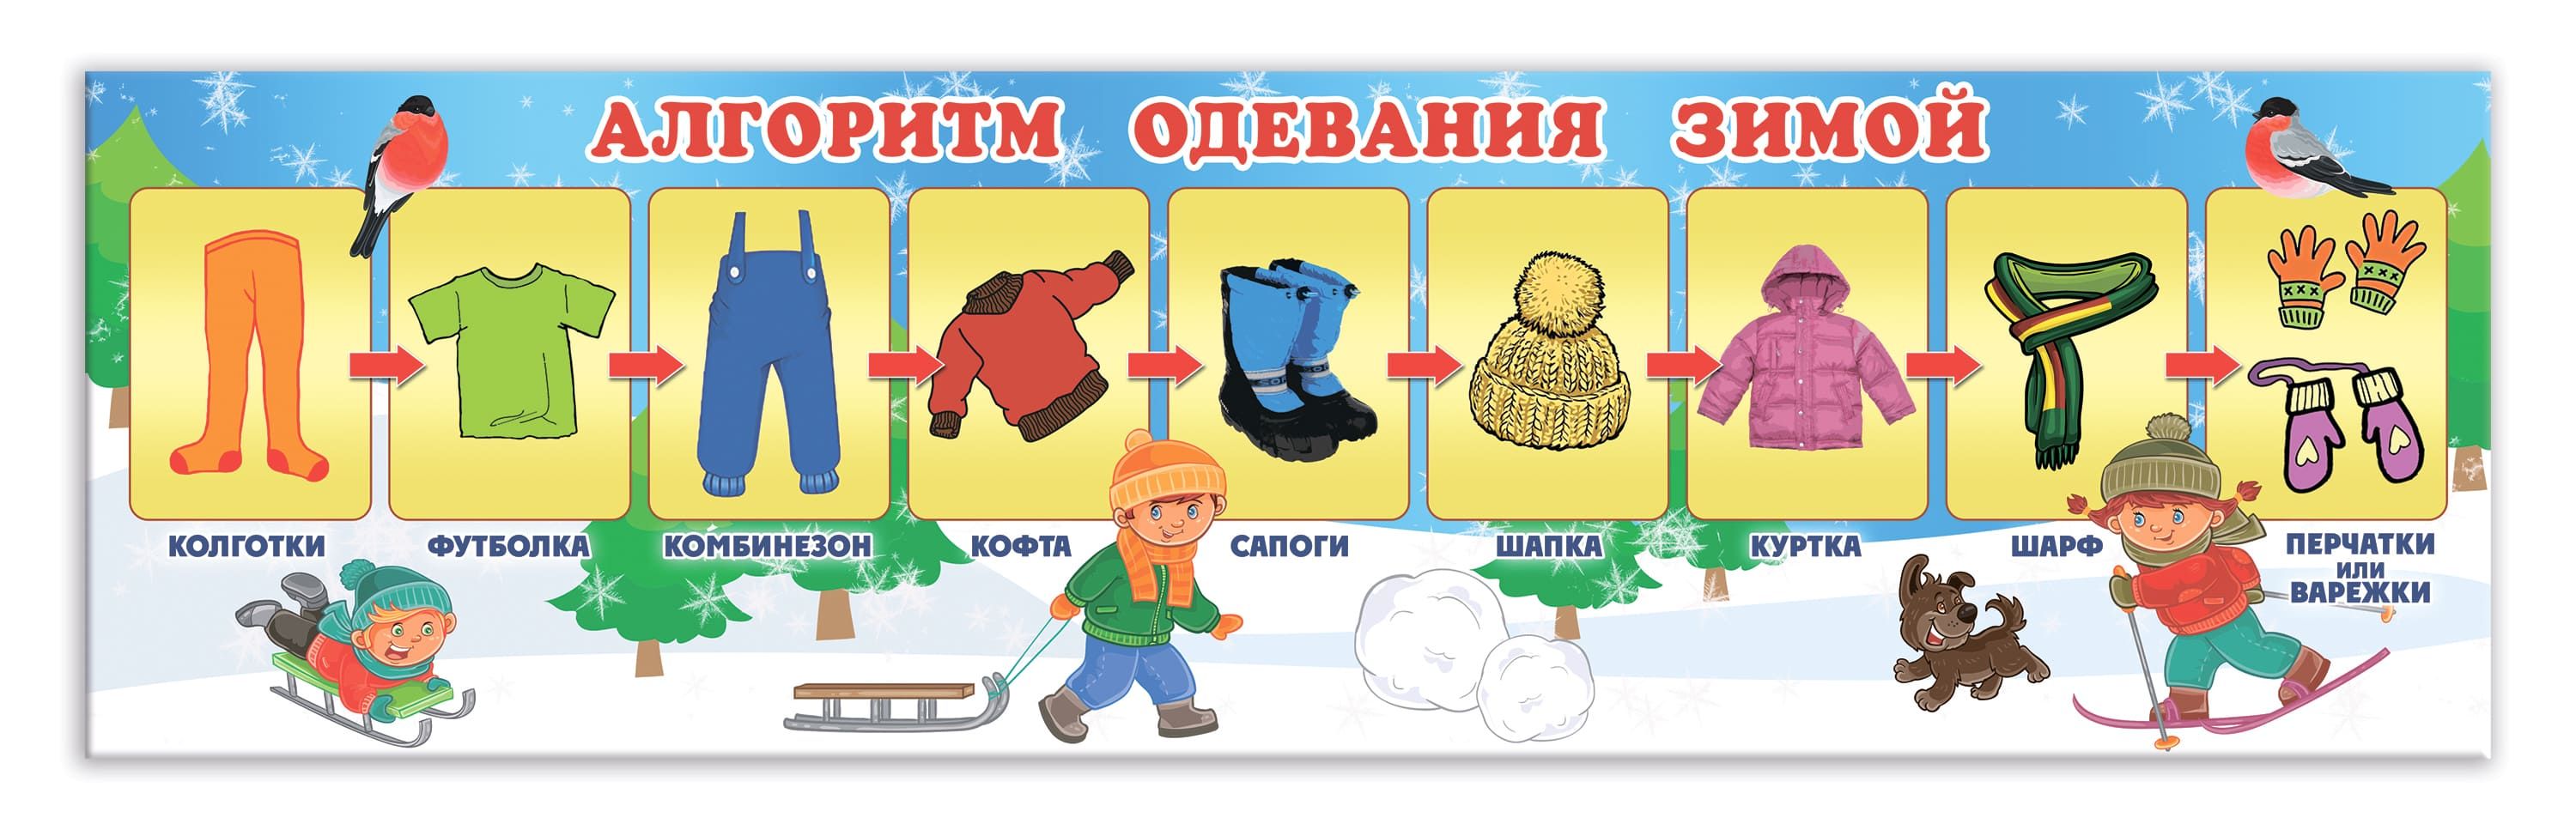 Алгоритм одевания на прогулку зимой в детском саду